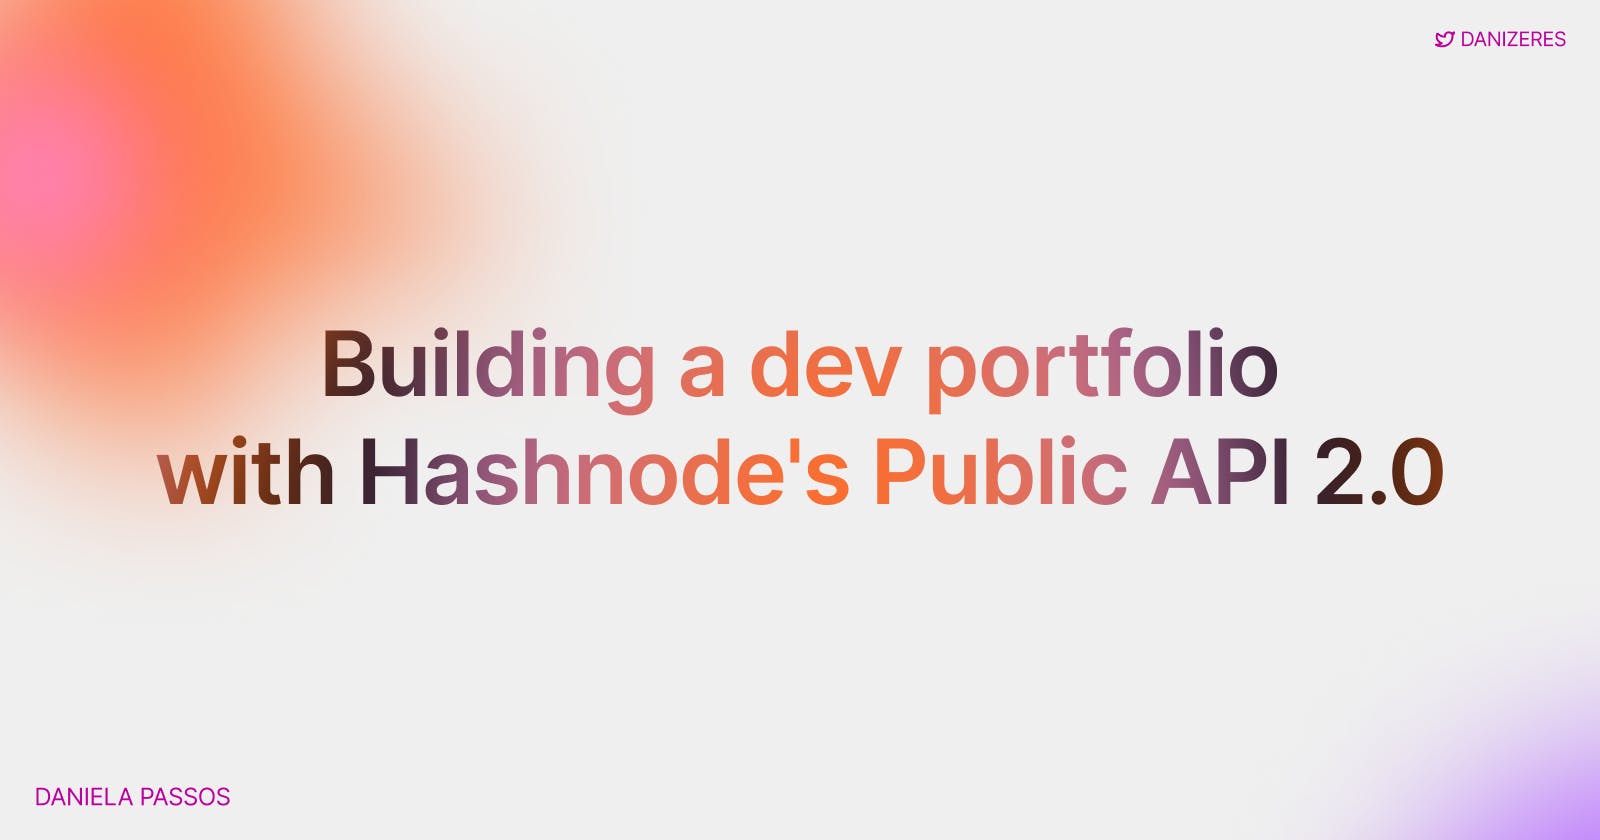 Building a portfolio with Hashnode's Public API 2.0